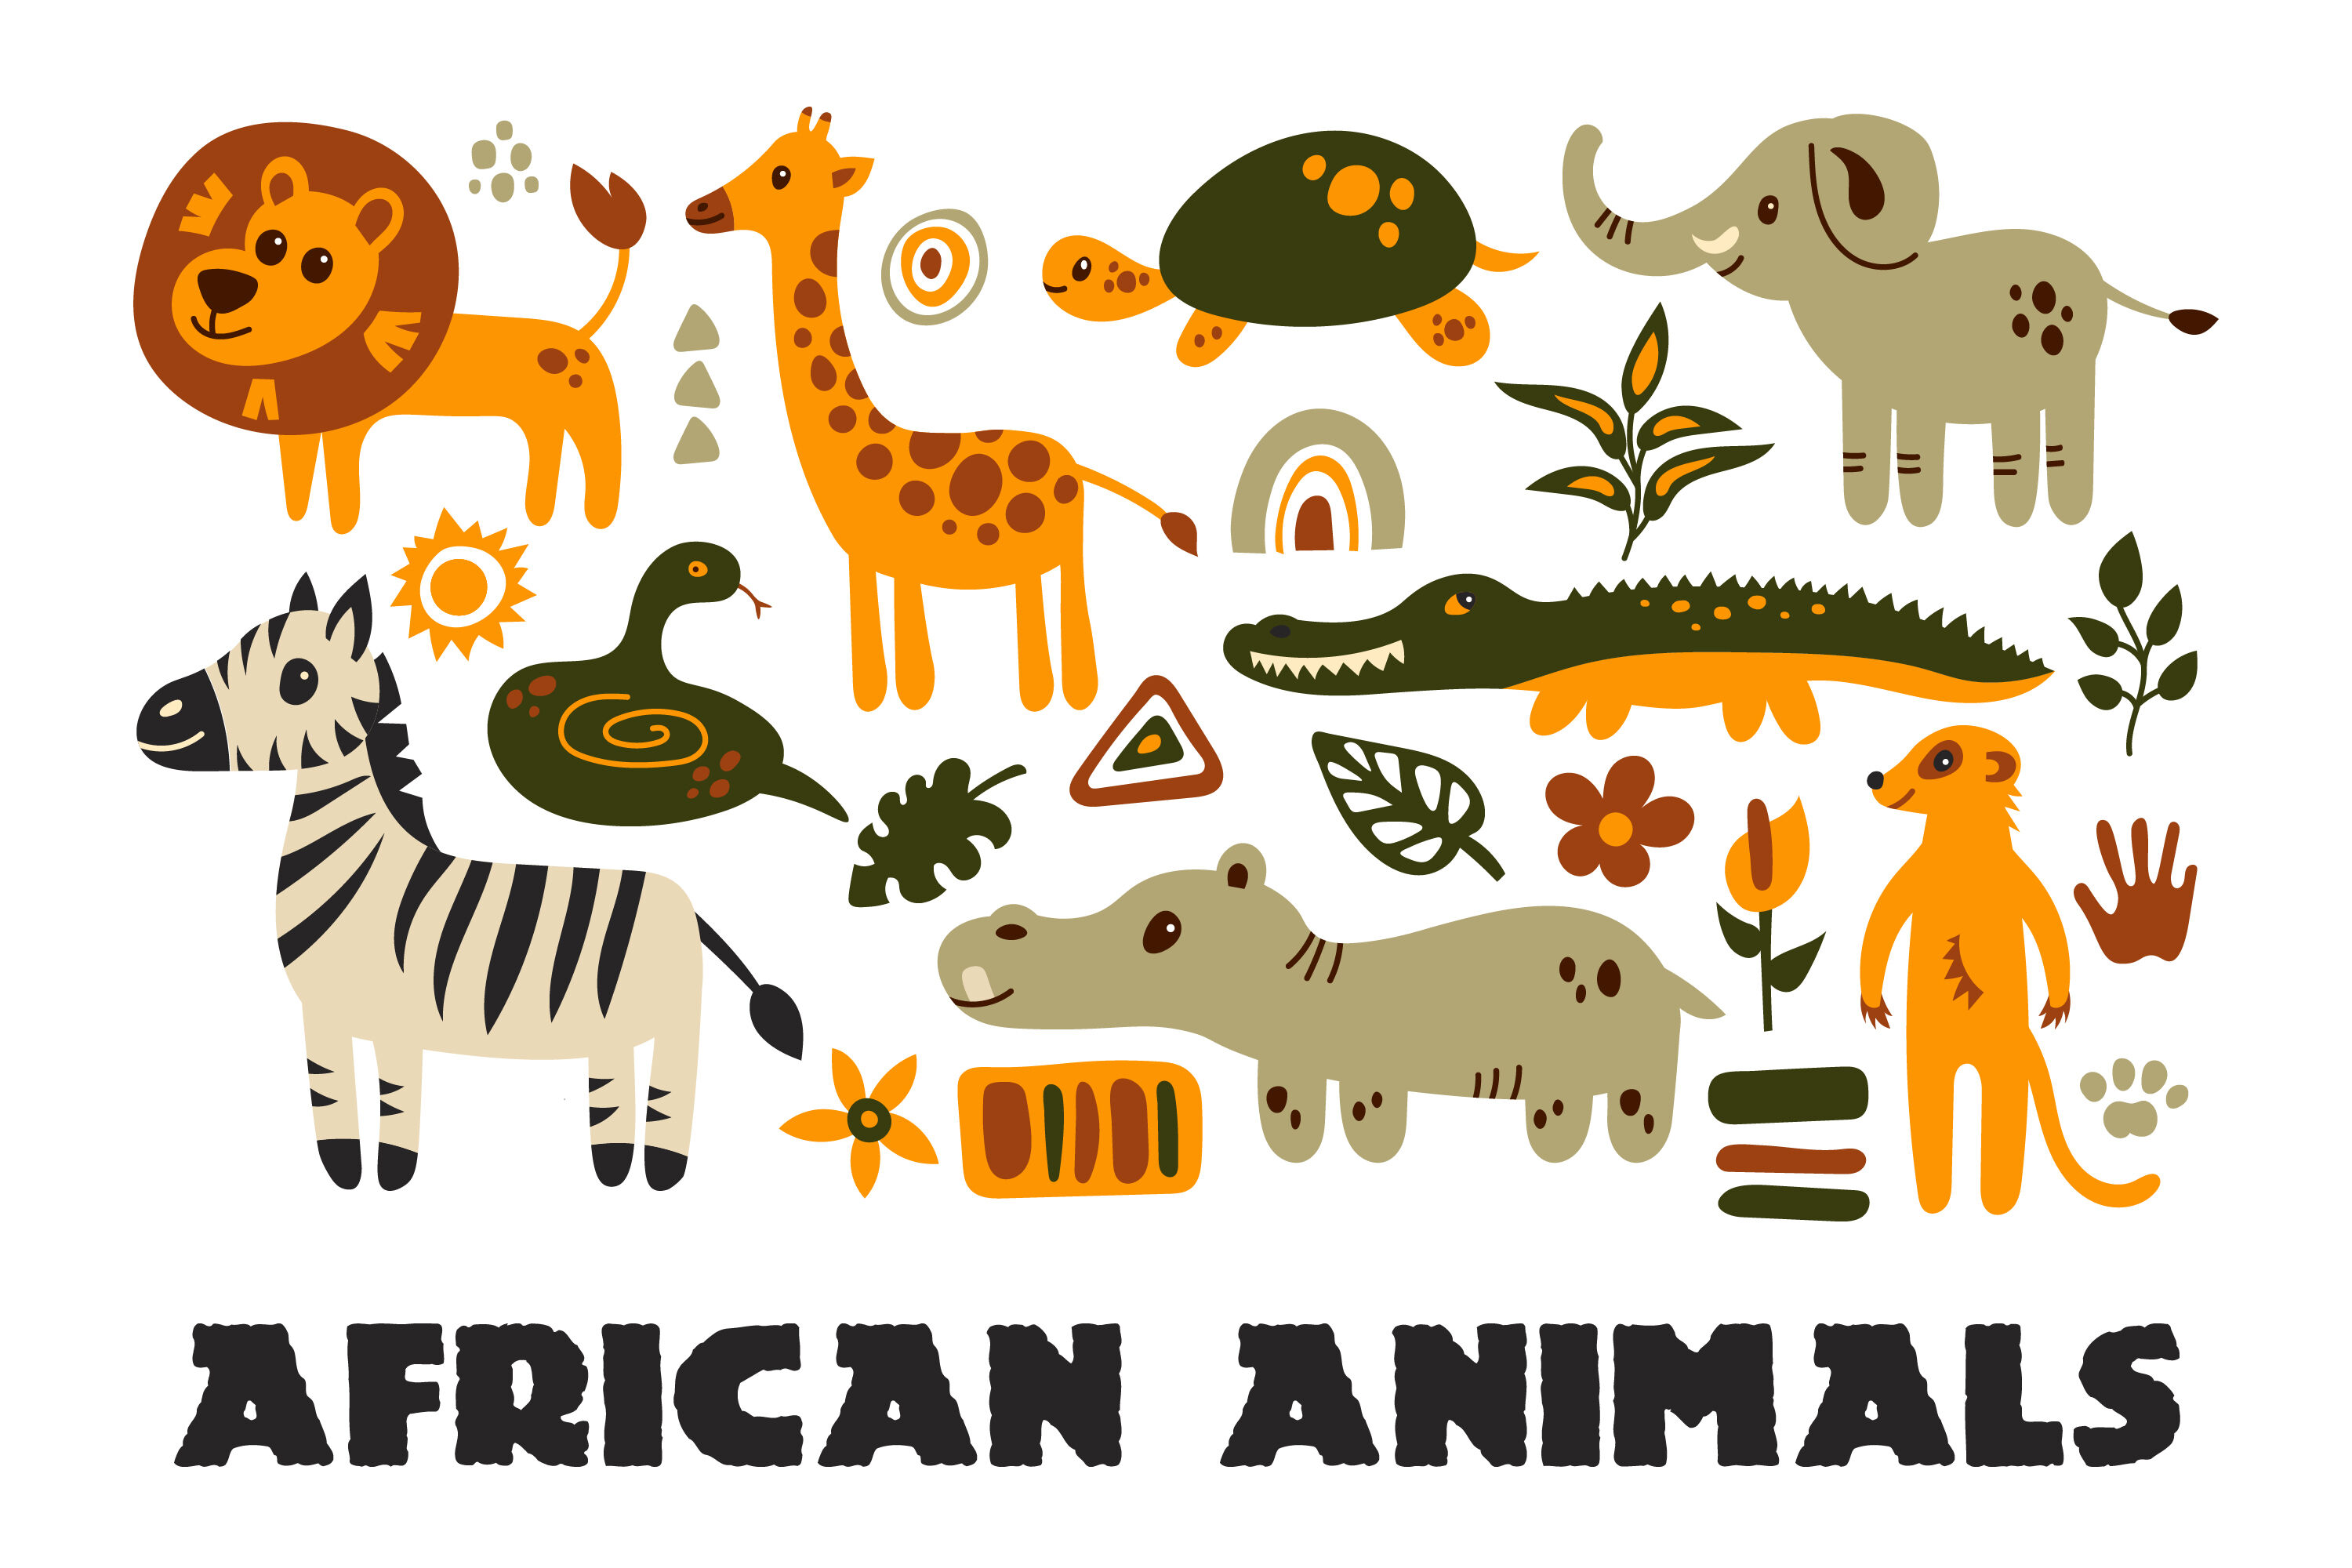 jungles in africa animals